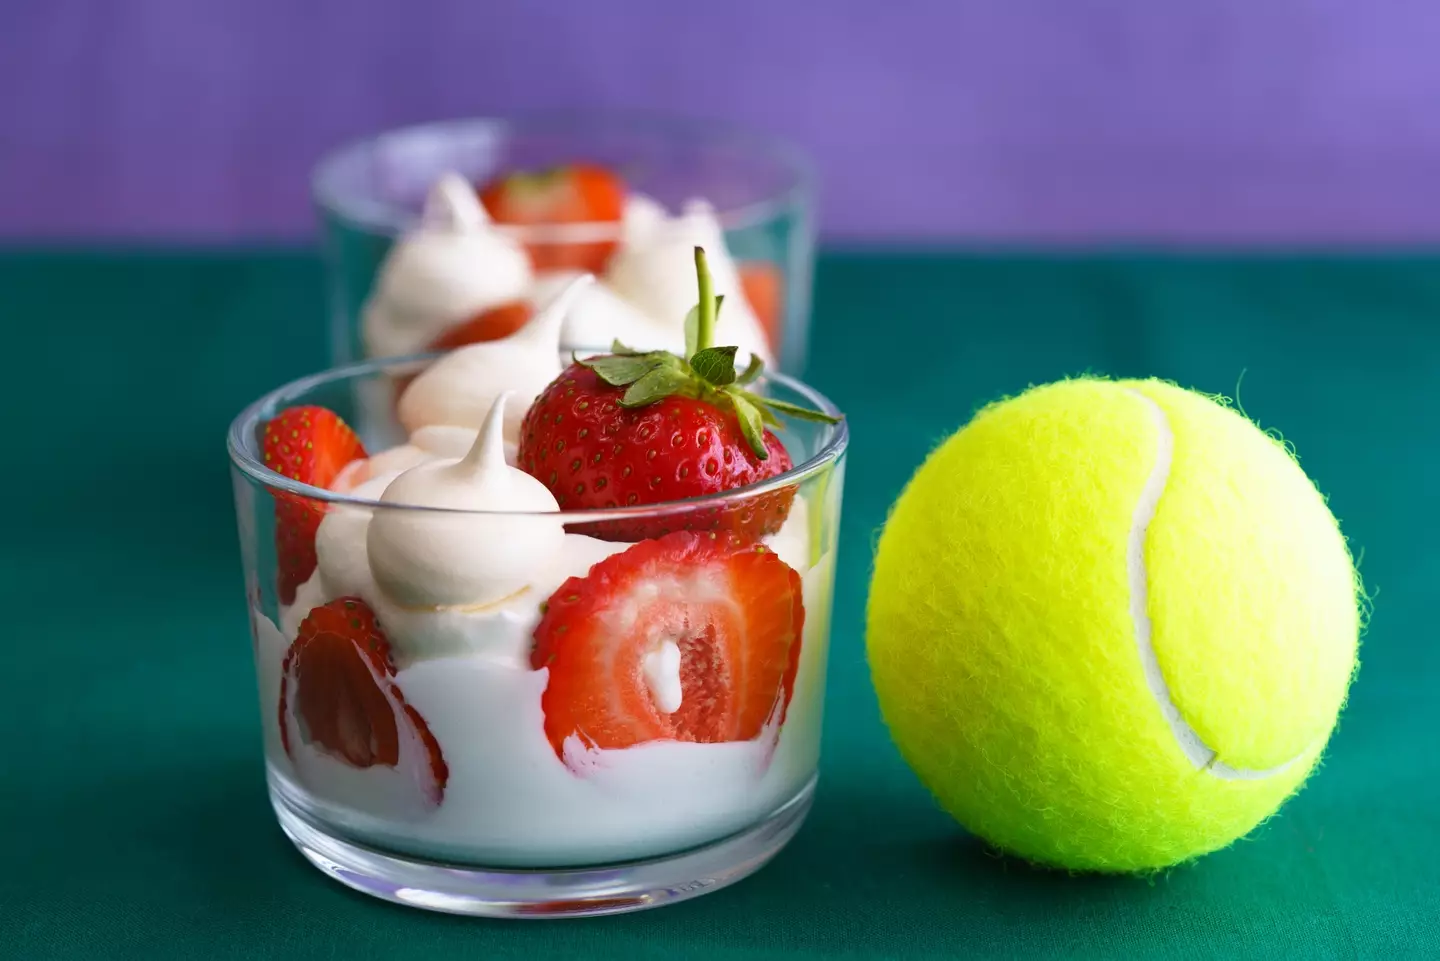 Wimbledon strawberries and cream.